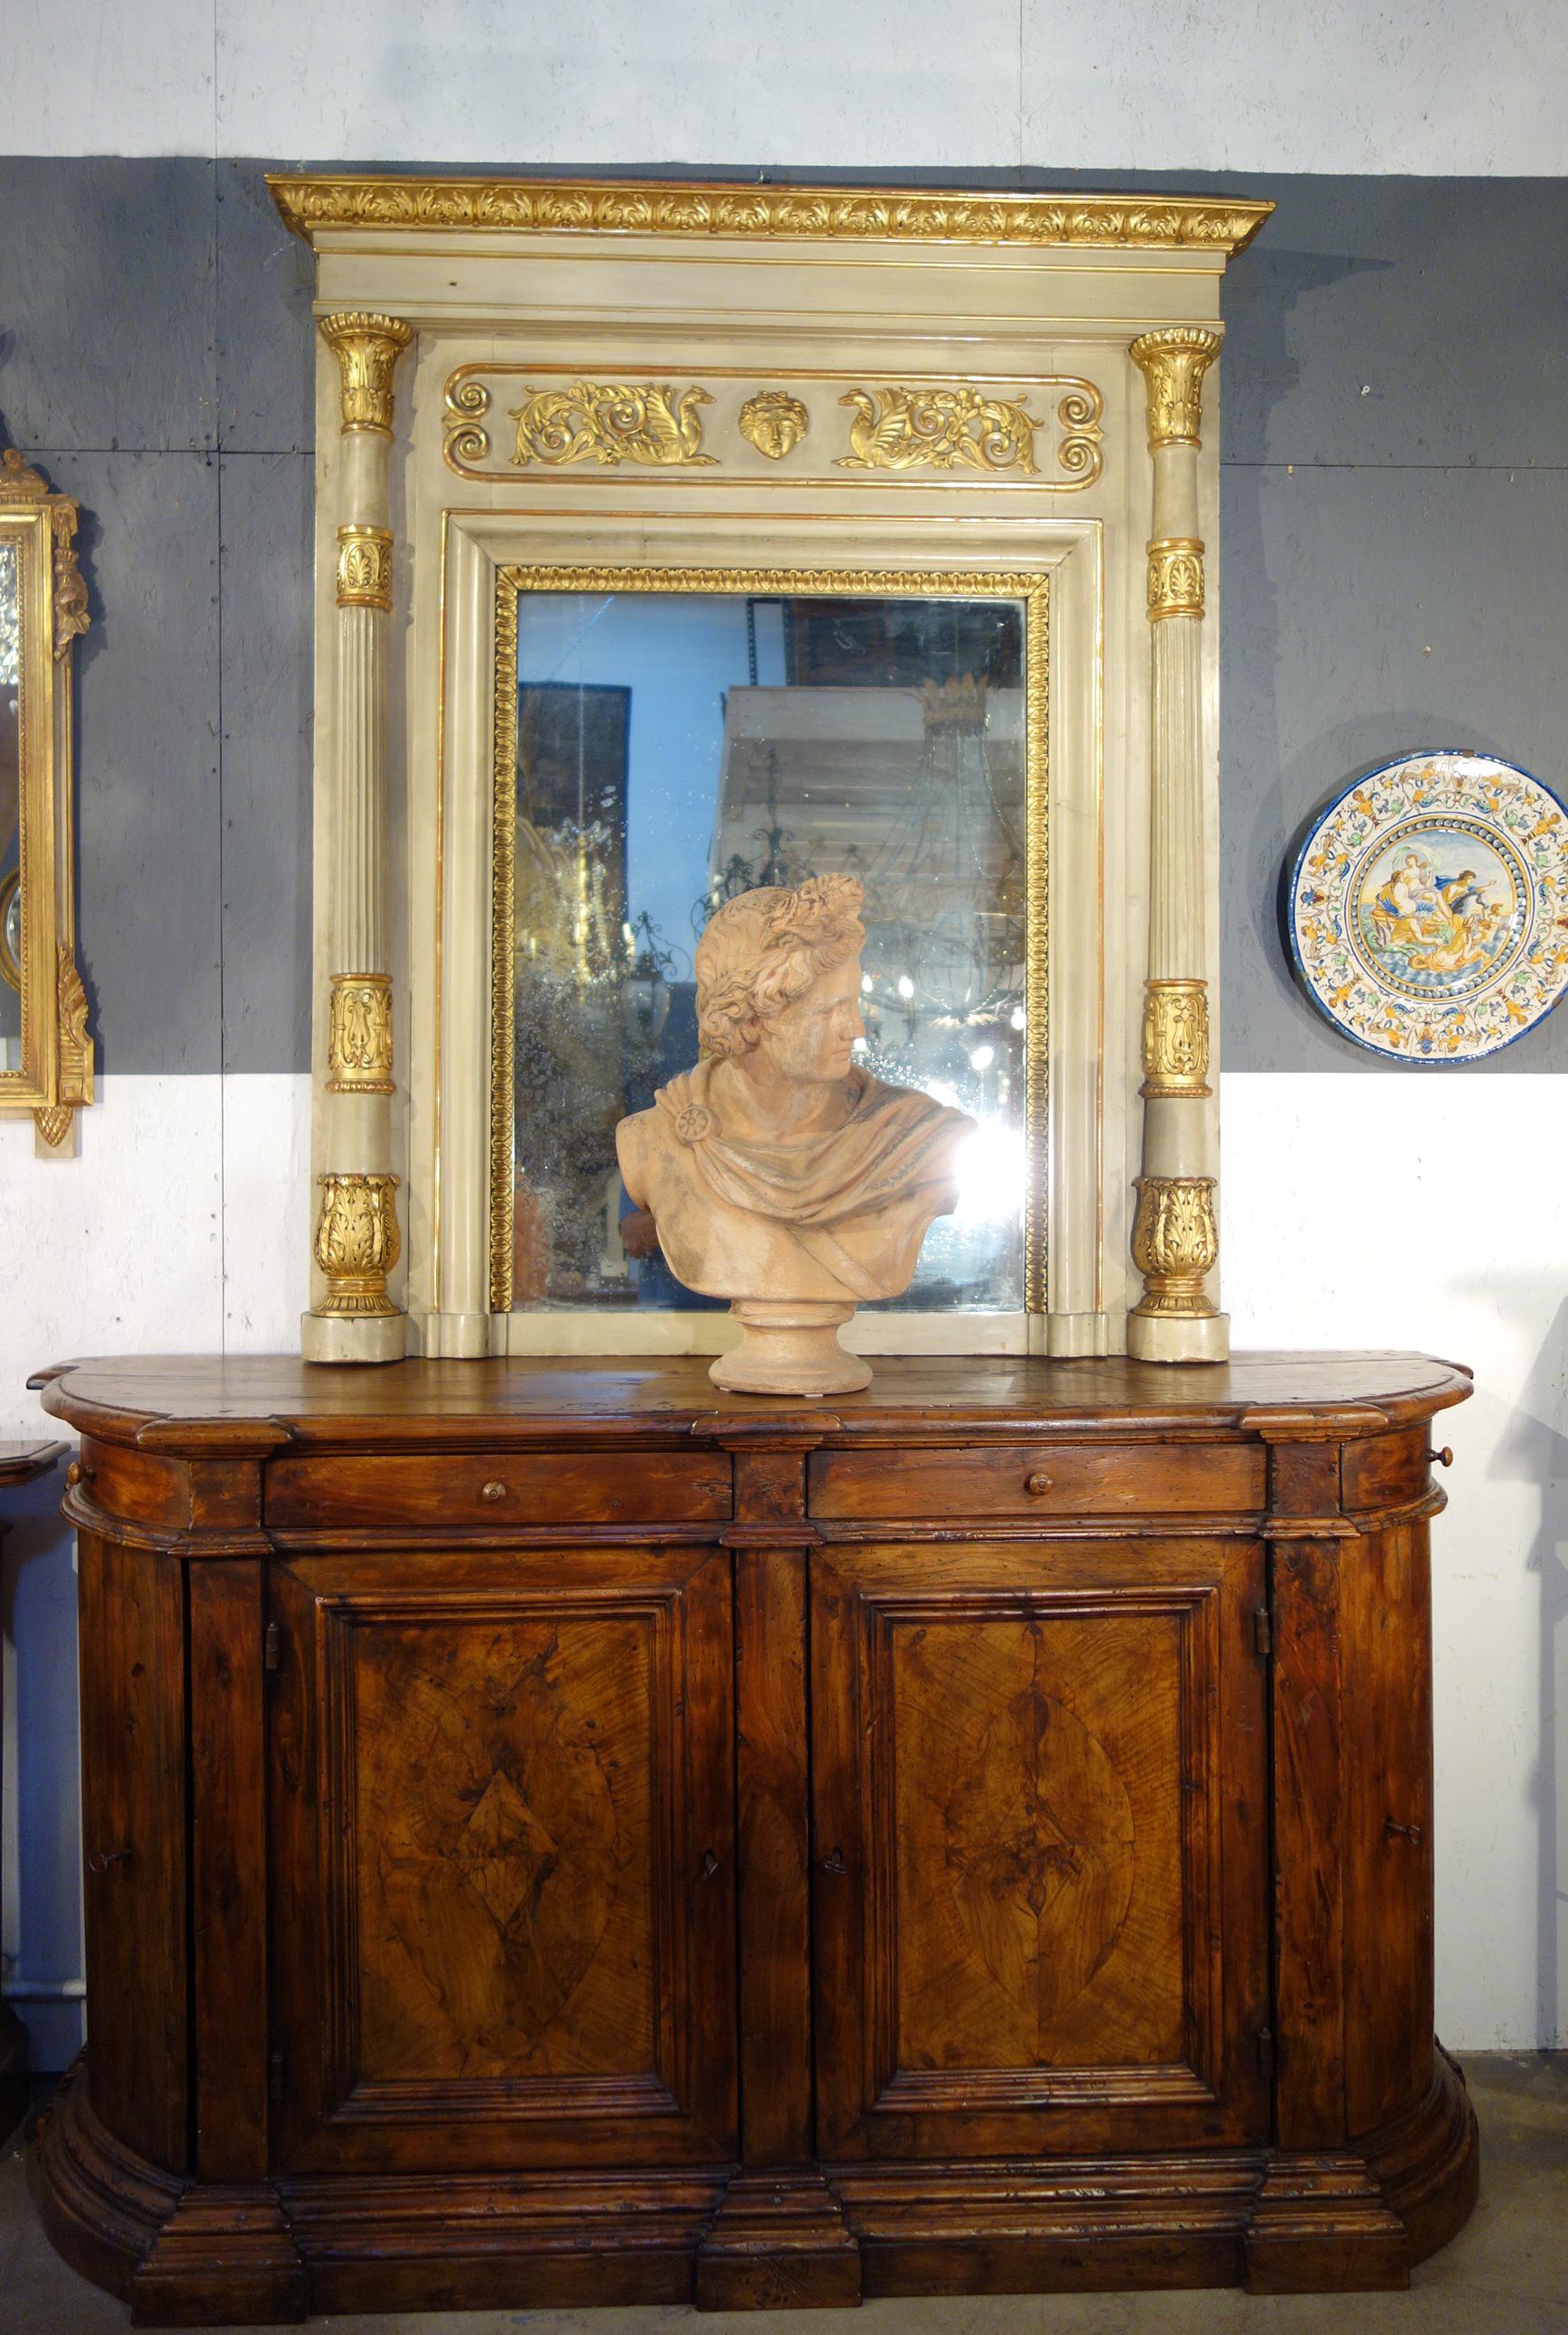 Grand miroir Trumeau italien de style néoclassique, finement orné. La laque beige patinée, vieillie par le temps, s'associe aux détails en bois doré pour créer une architecture grandiose et impressionnante. La période néoclassique s'est inspirée des